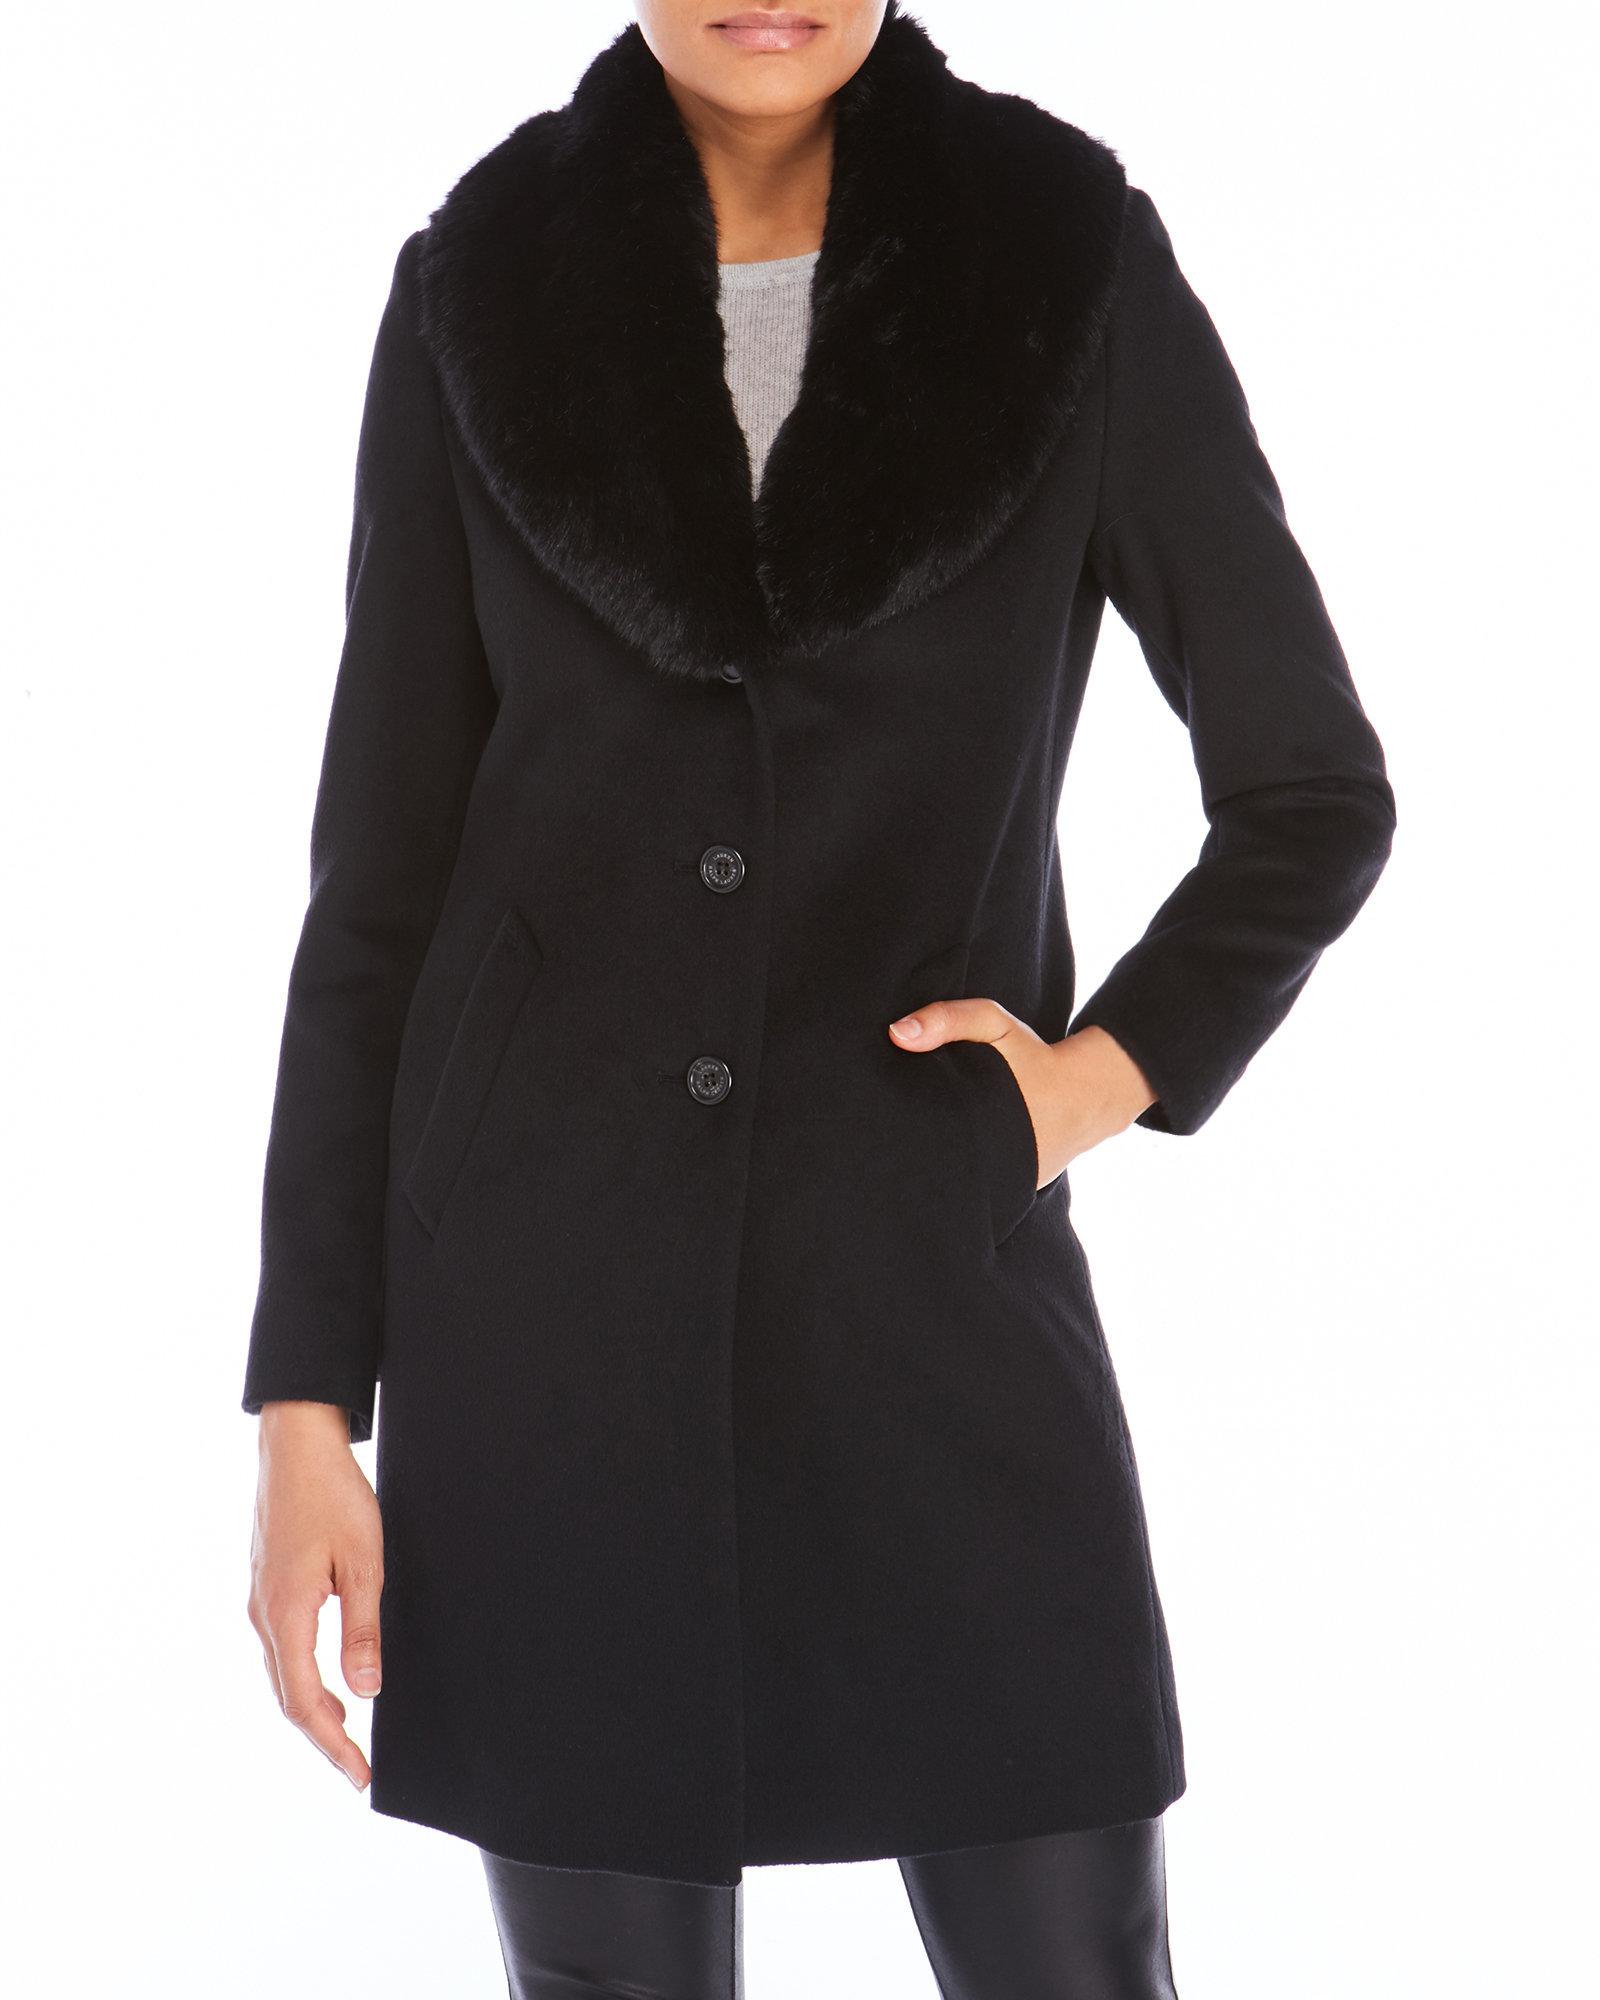 Lauren by Ralph Lauren Faux Fur Collar Wool Coat in Black - Lyst